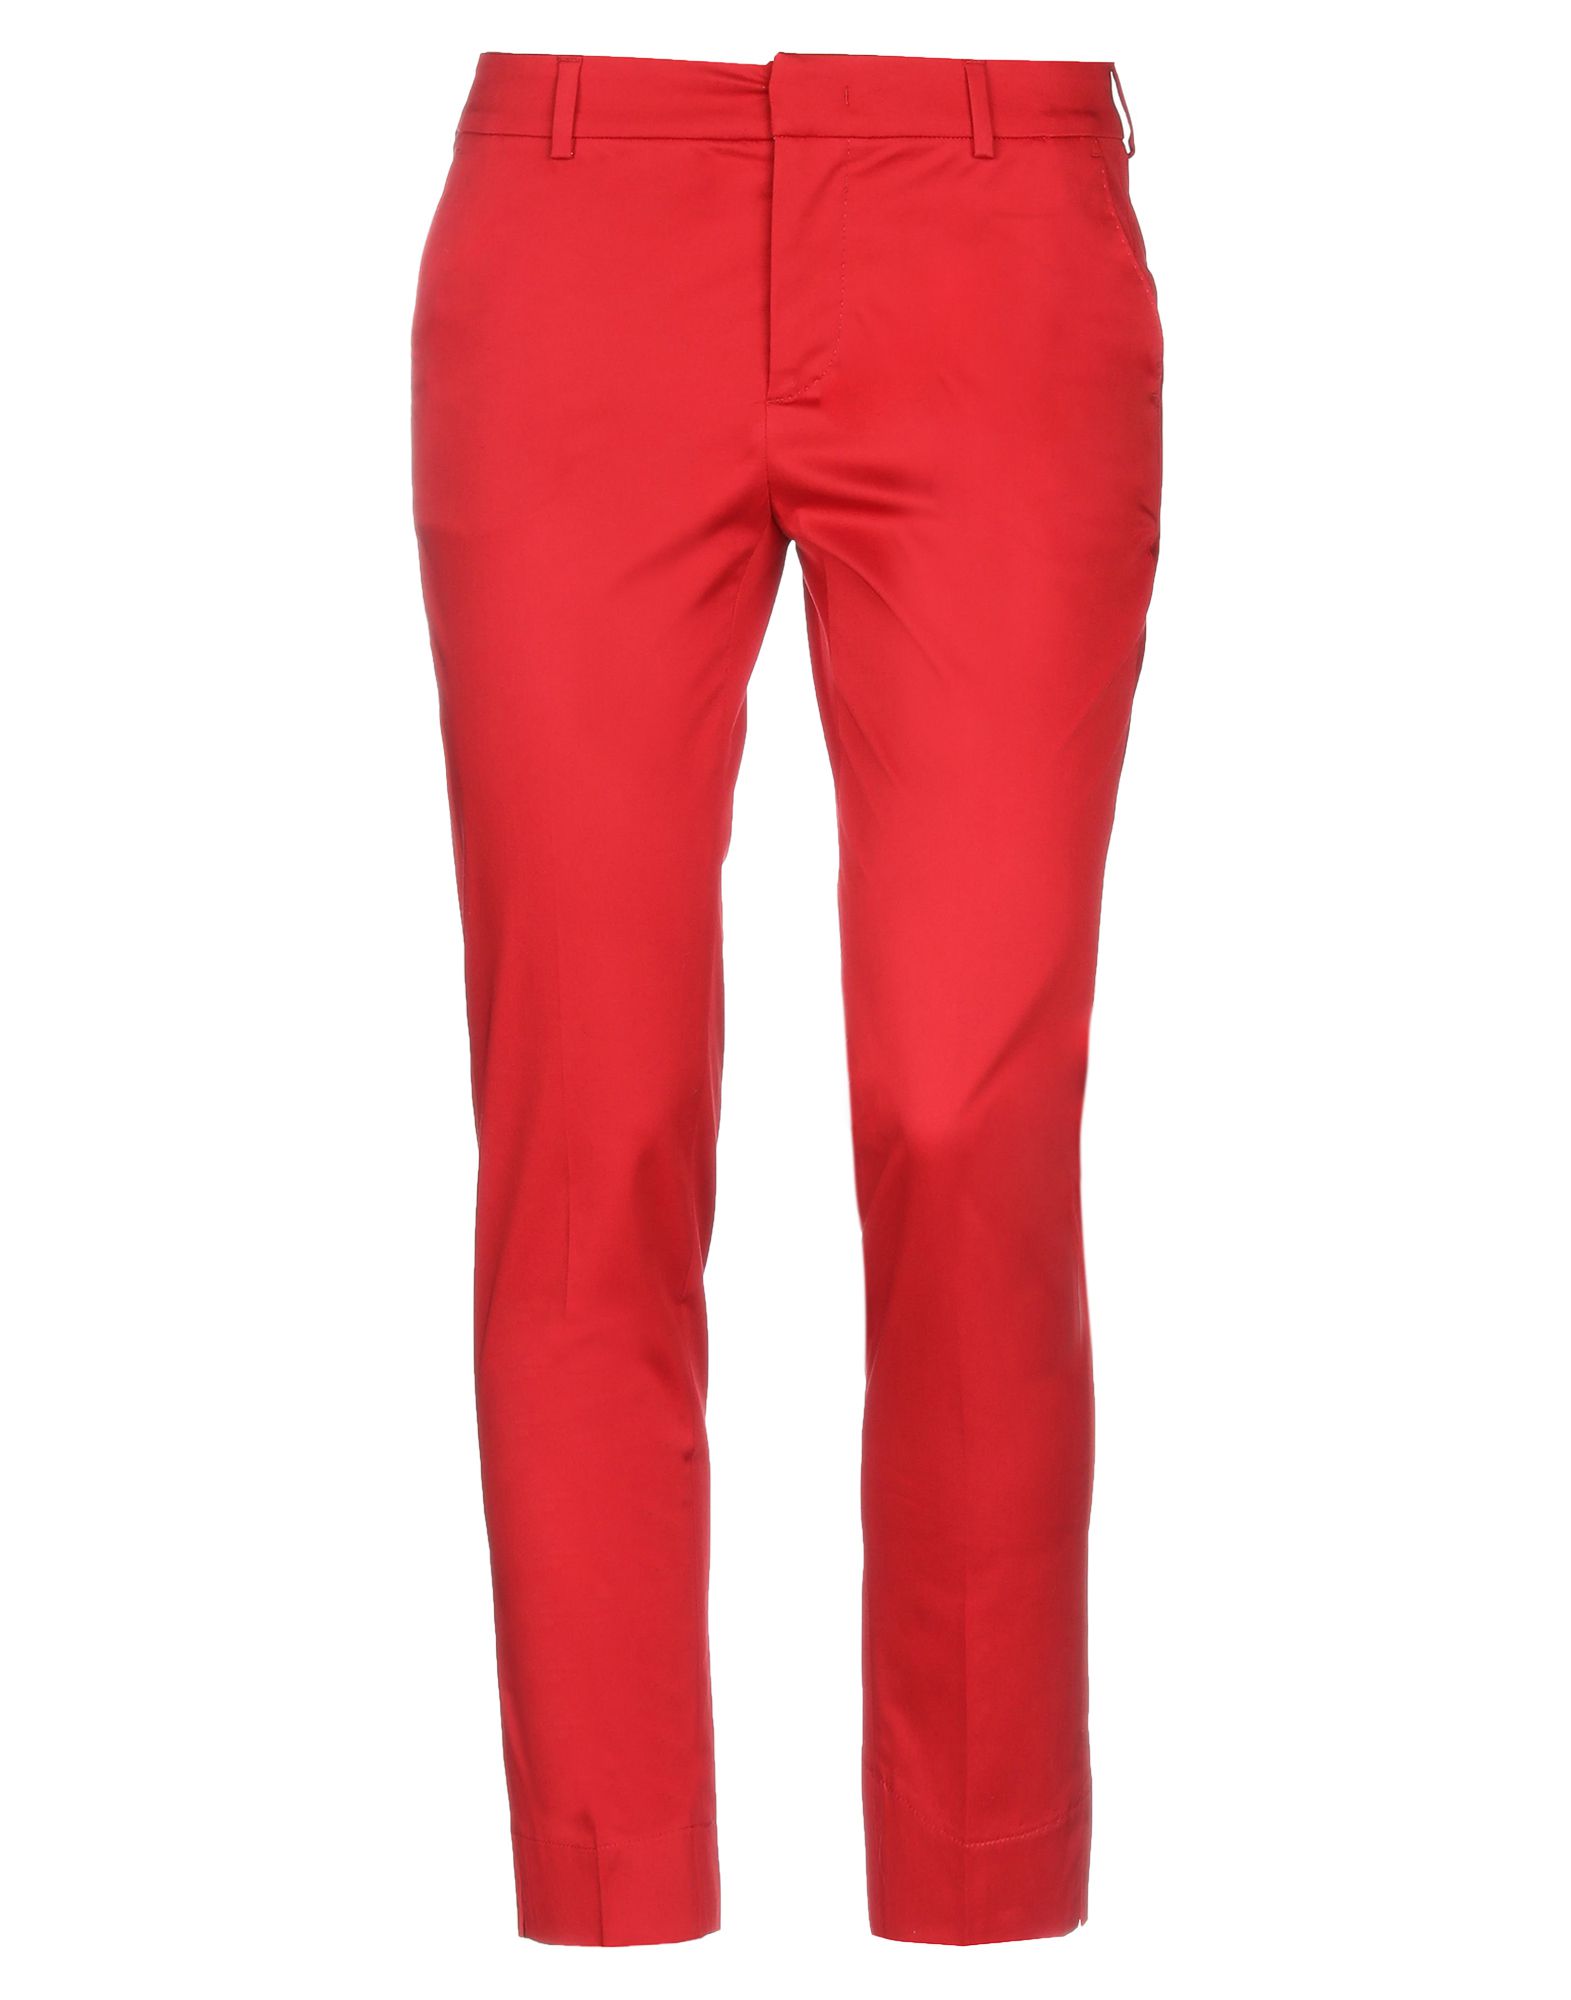 Повседневные брюки  - Бежевый,Красный цвет